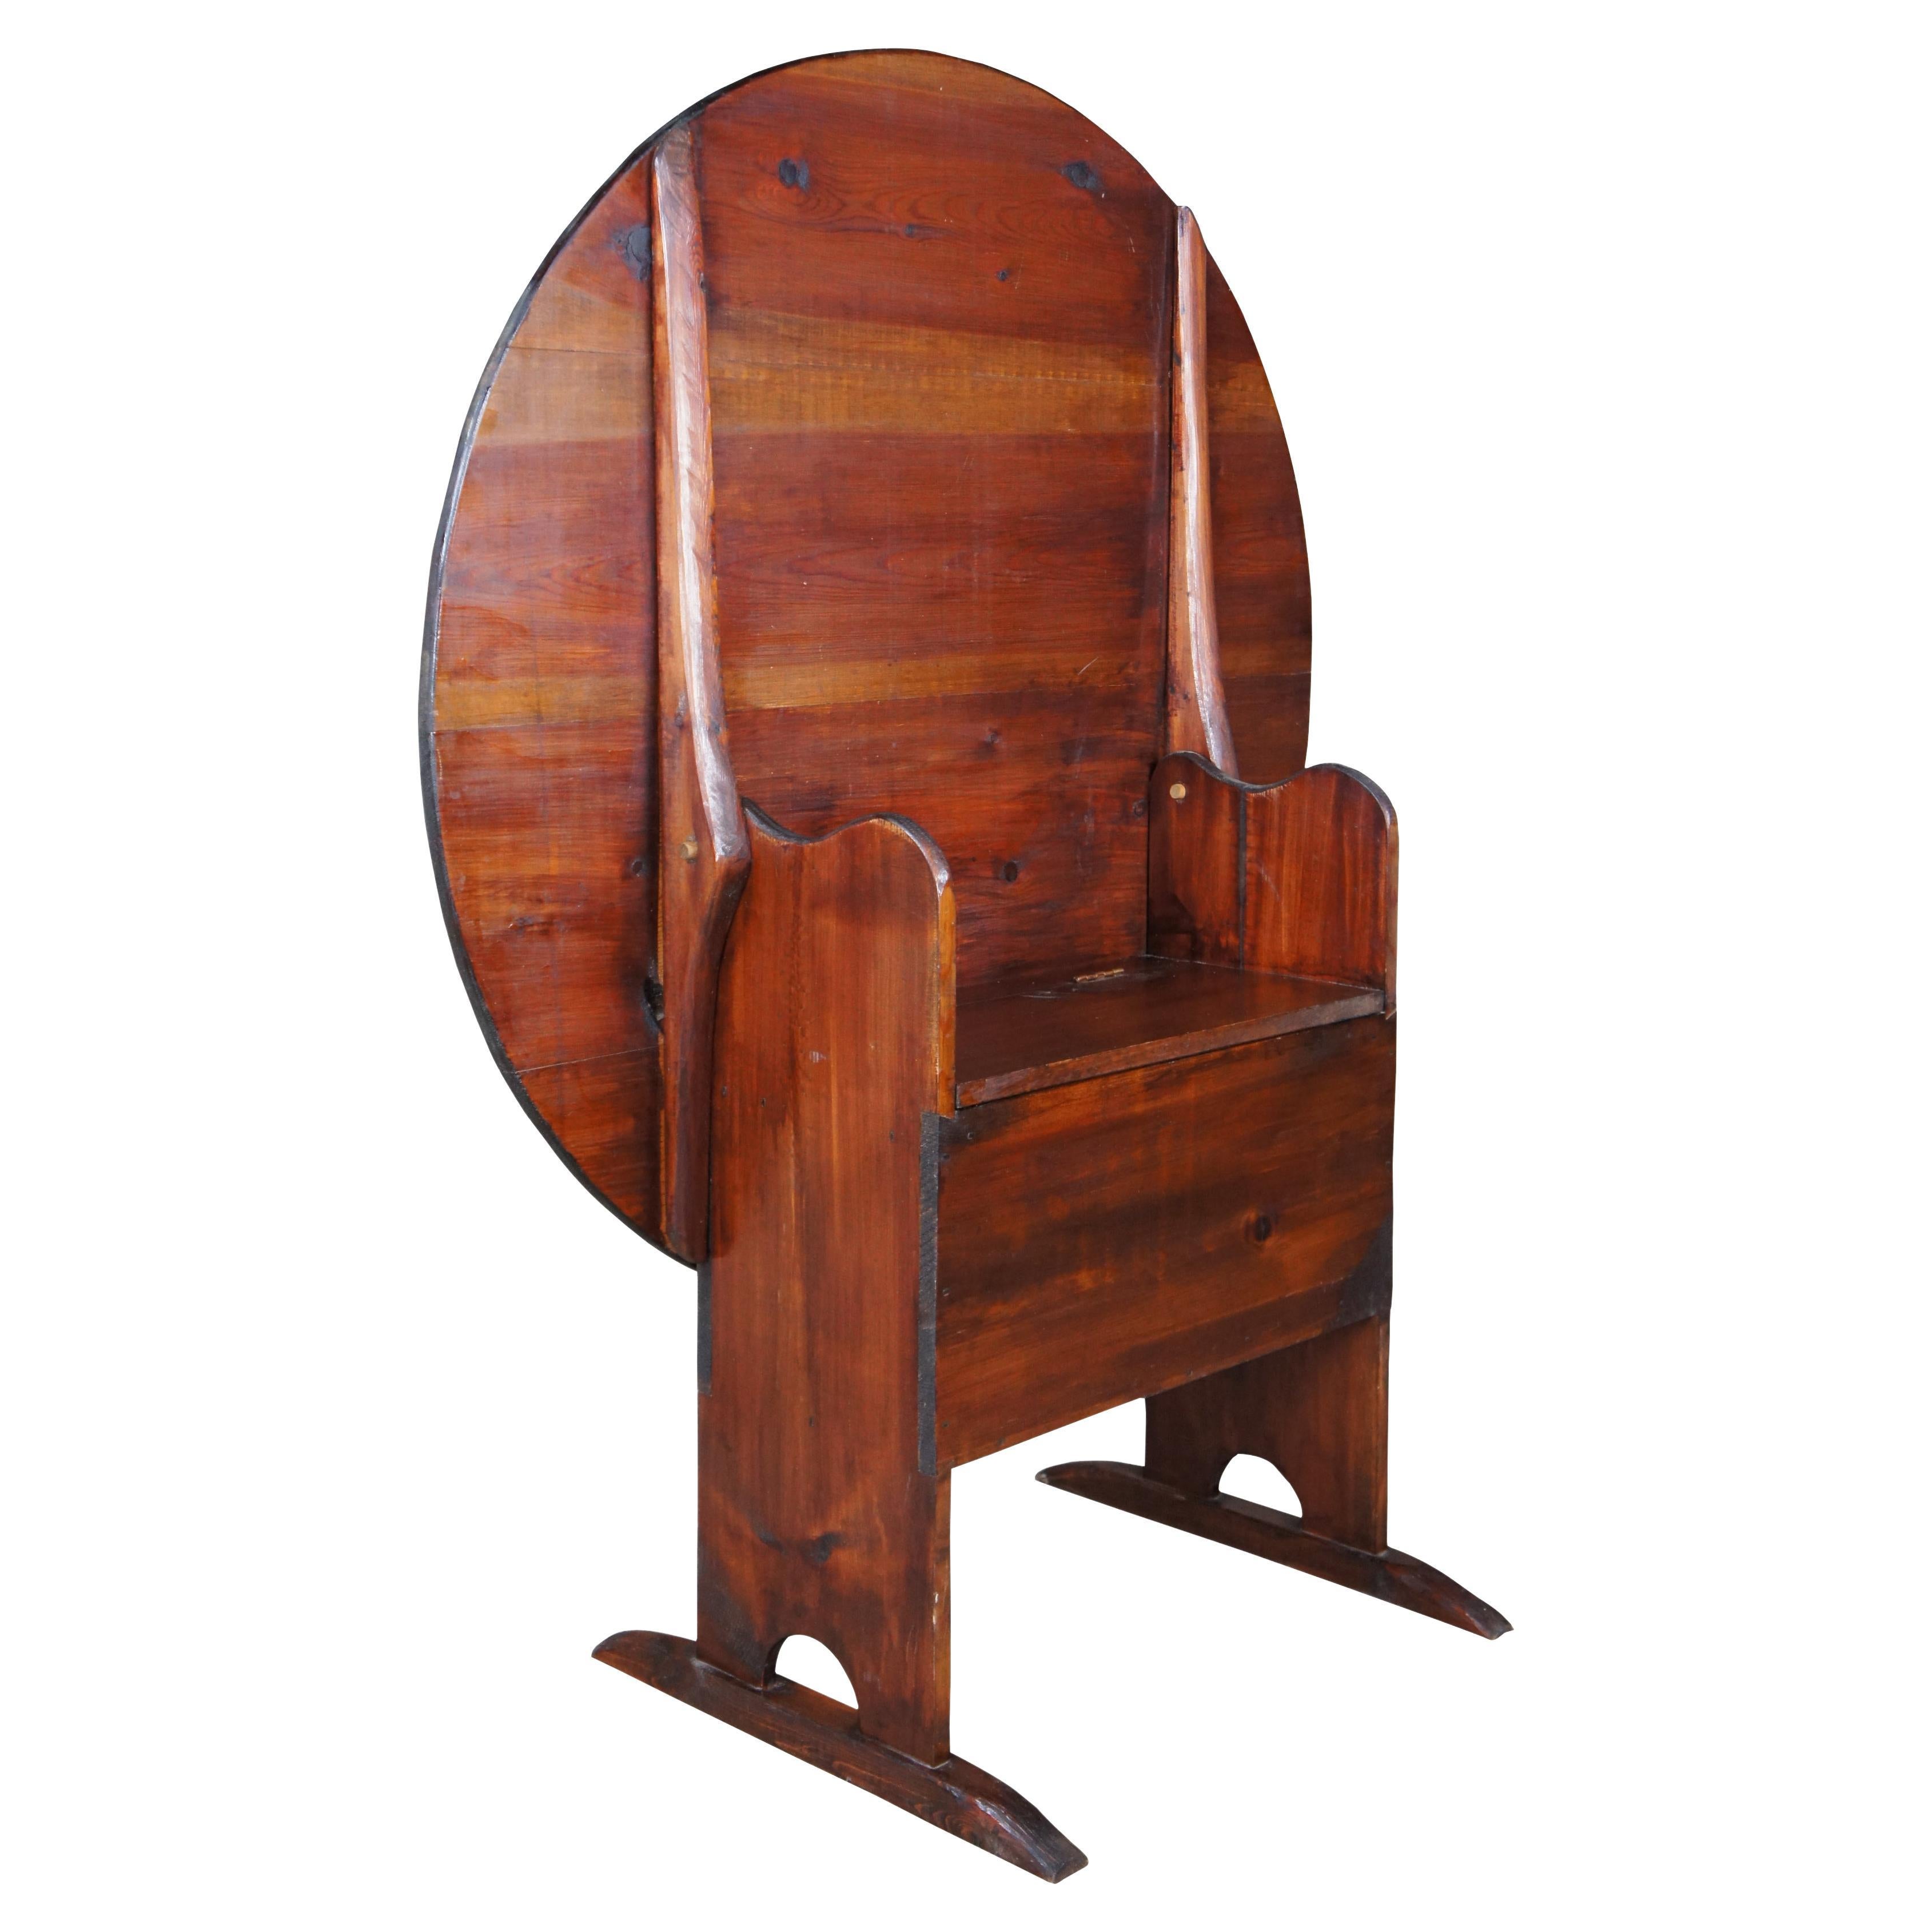 Antique table de rangement pour pieds de chaussures à plateau basculant en pin américain, Tavern Chair Storage